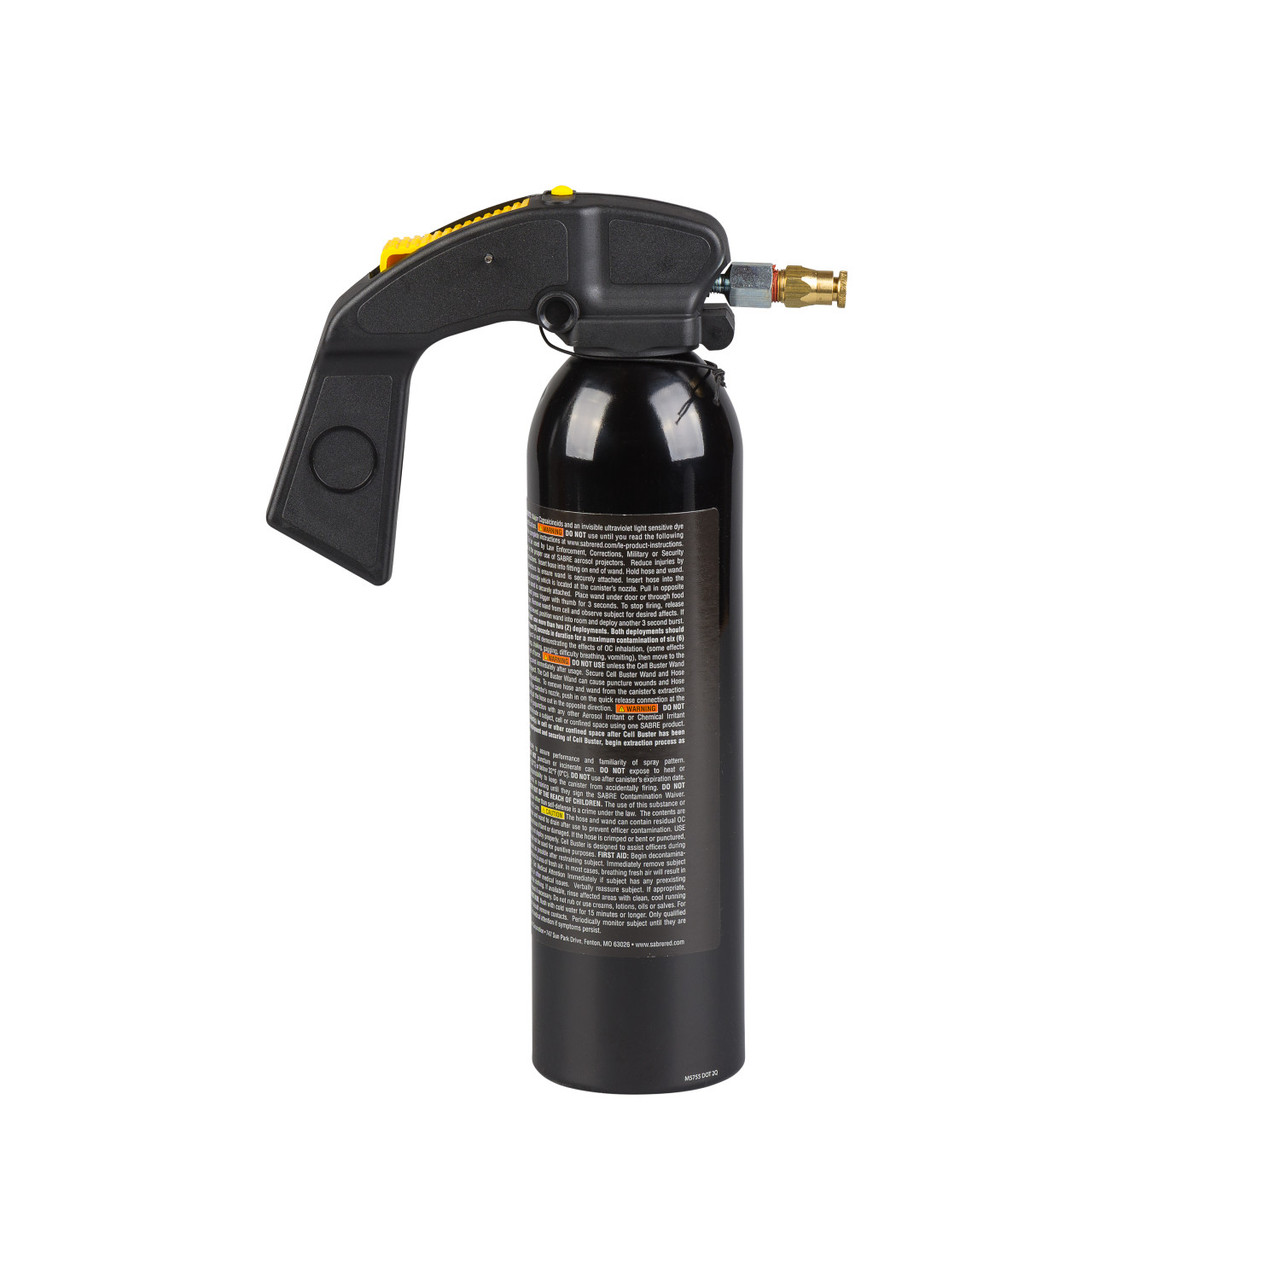 Comprar Red Pepper Spray de pimienta MK-4 aerosol 75 ml en ASMC